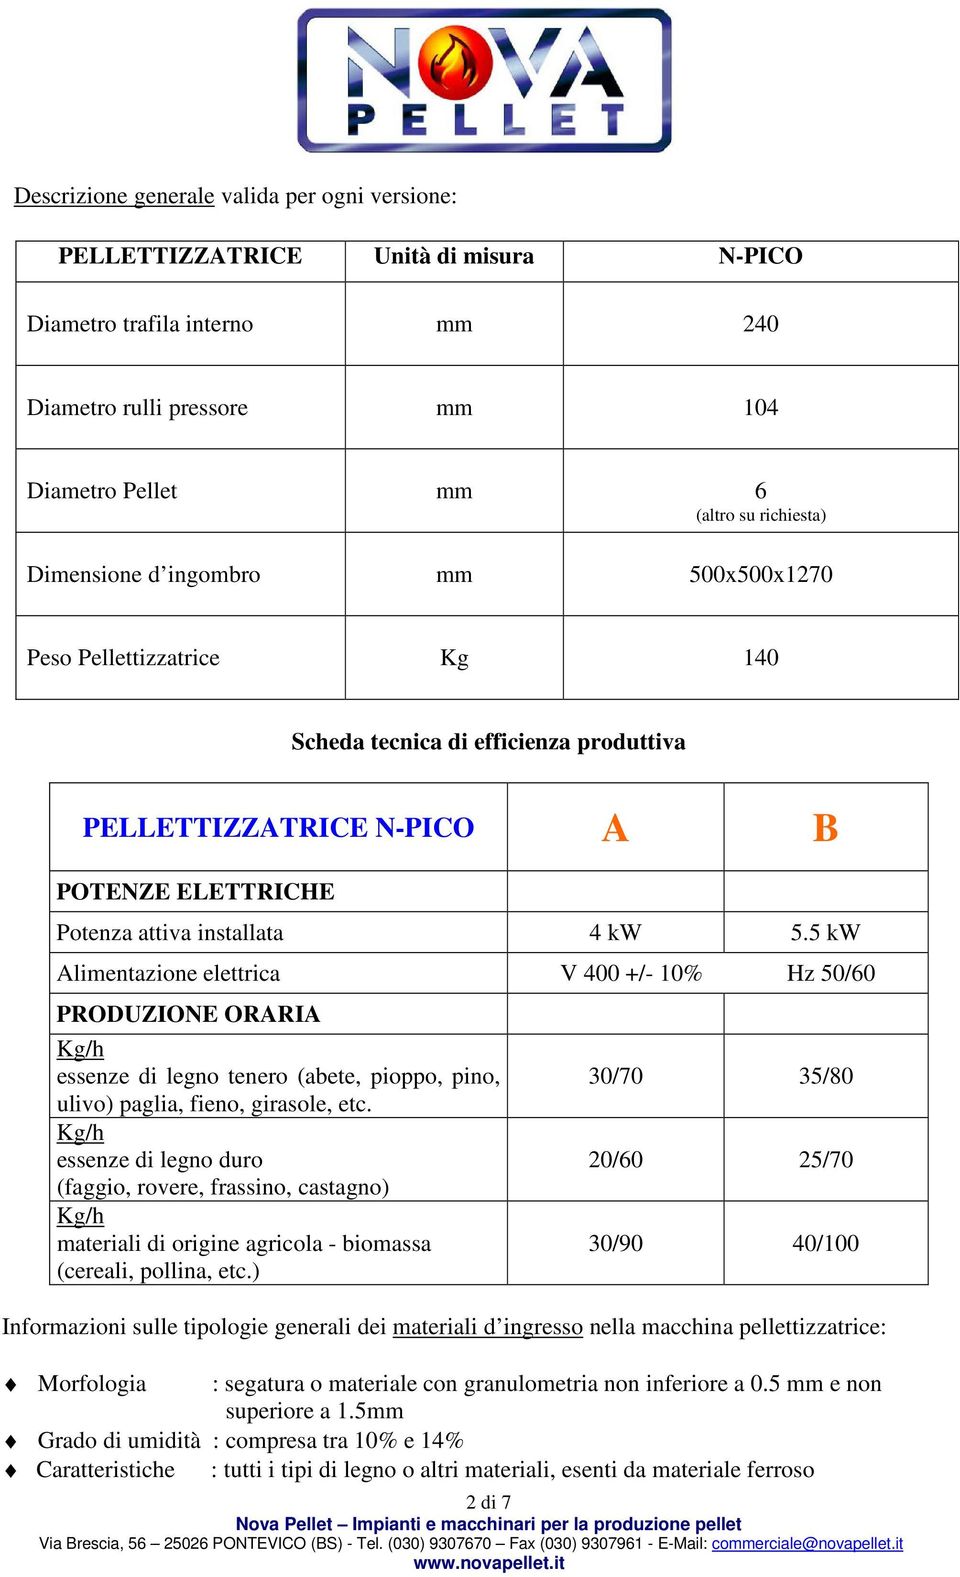 5 kw Alimentazione elettrica V 400 +/- 10% Hz 50/60 PRODUZIONE ORARIA essenze di legno tenero (abete, pioppo, pino, ulivo) paglia, fieno, girasole, etc.